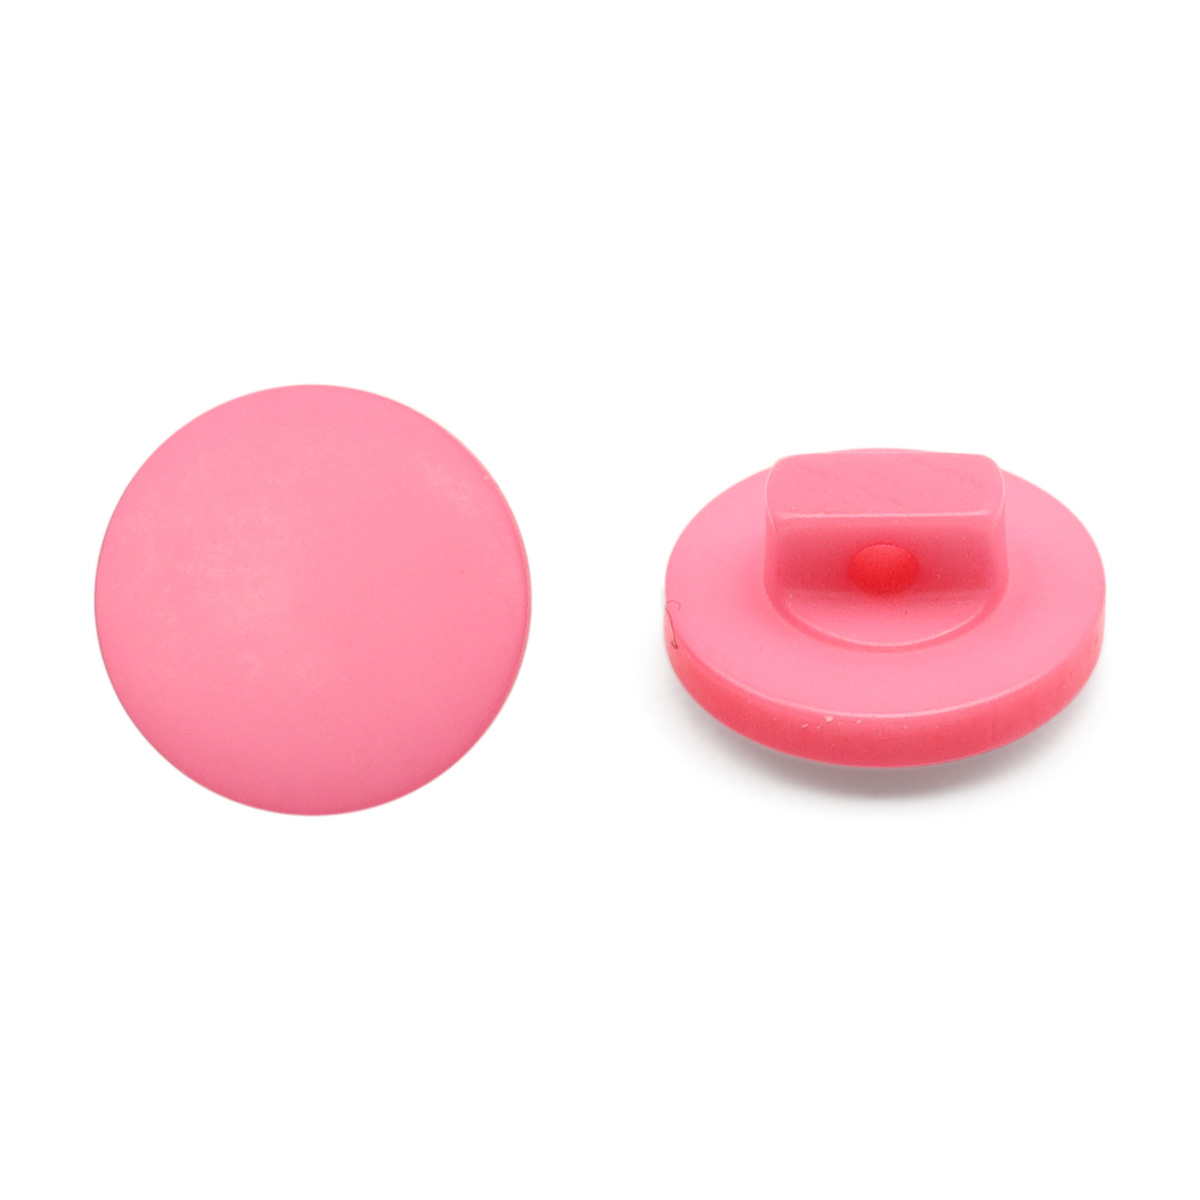 NE68 Пуговица 16L (10мм) на ножке, пластик (Pink (розовый))